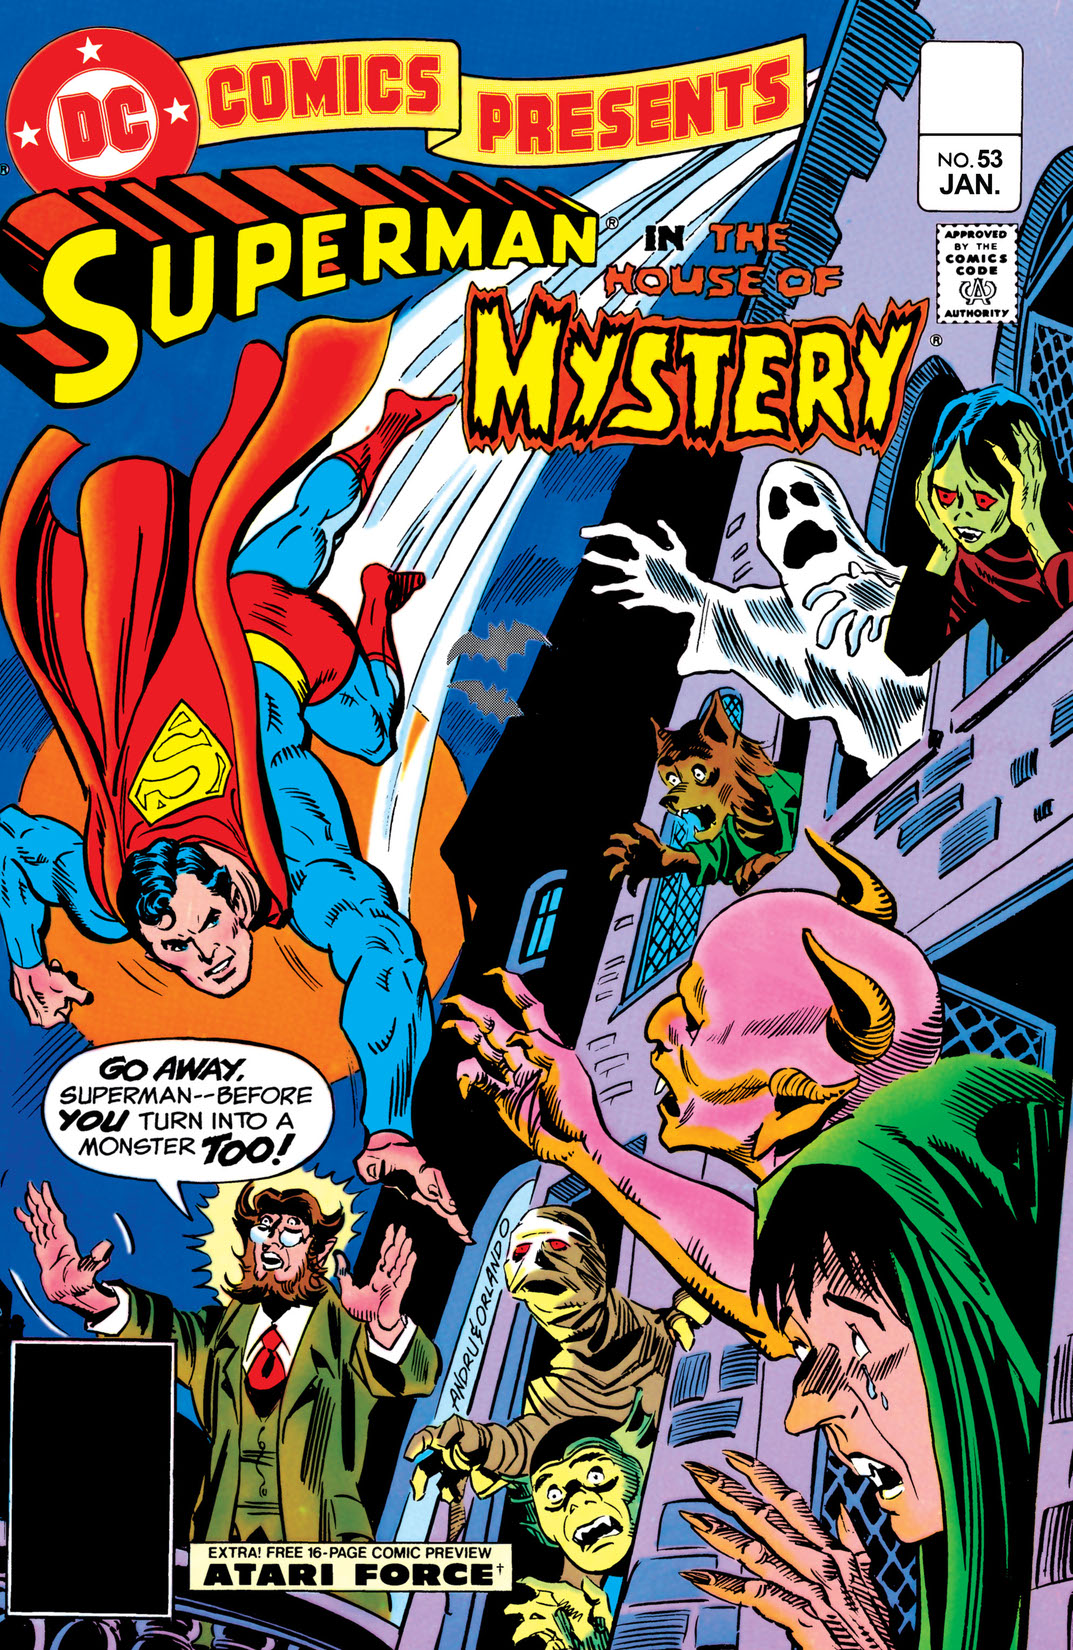 DC Comics Presents (1978-1986) #53 preview images